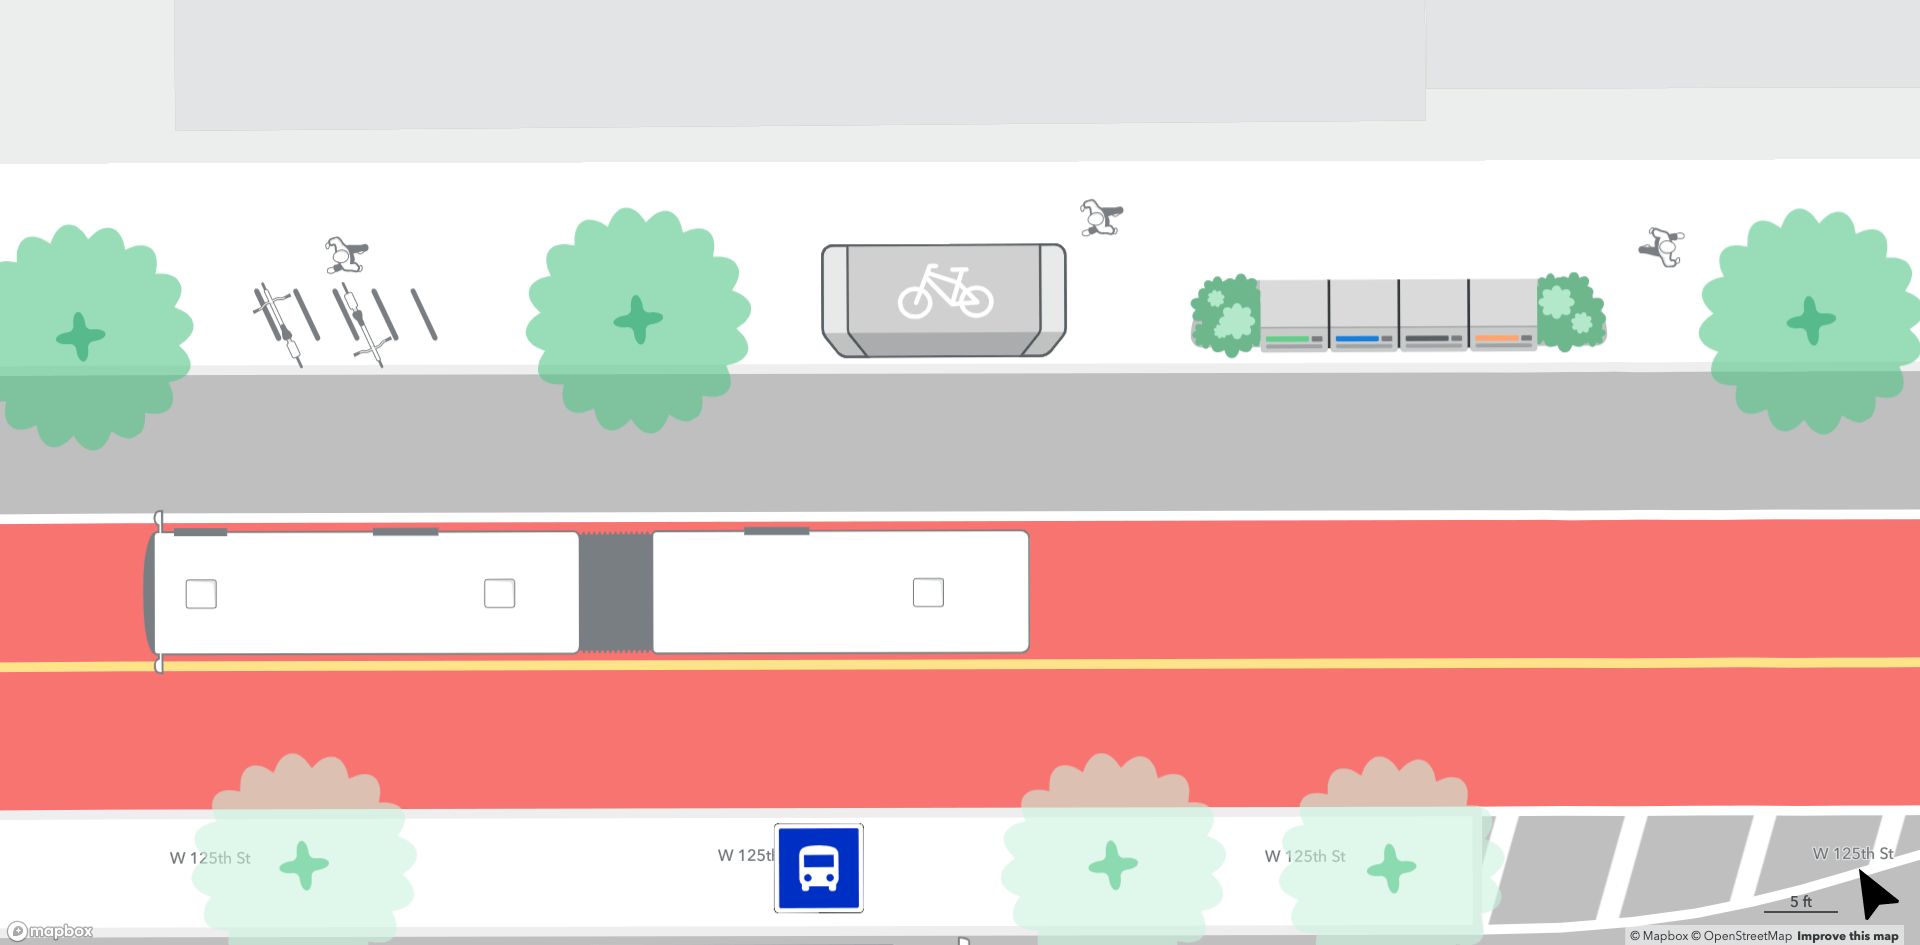 rendering of bike parking and secure bike storage